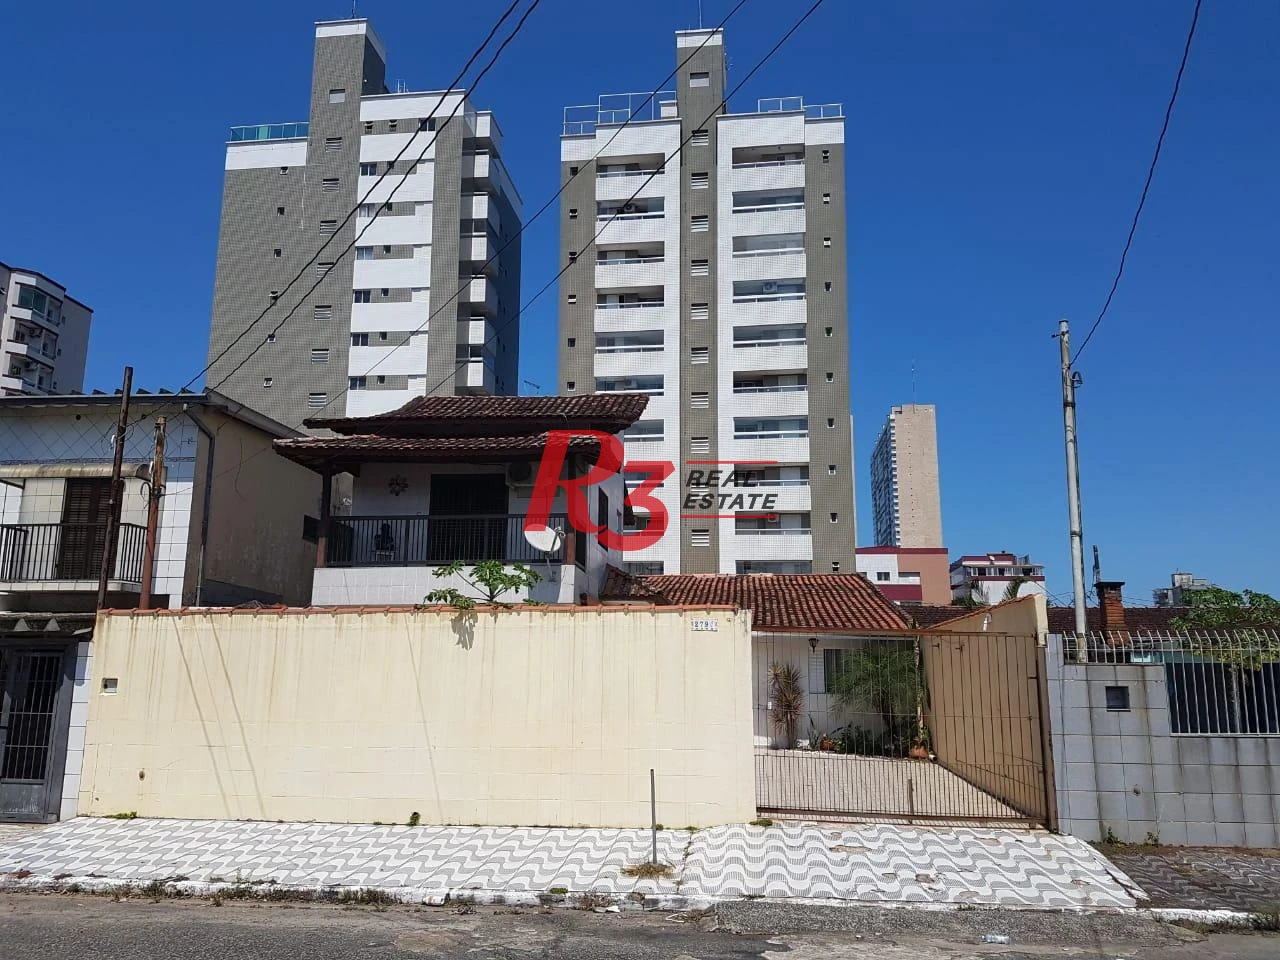 Sobrado com 3 dormitórios à venda, 124 m² por R$ 930.000,00 - Mirim - Praia Grande/SP